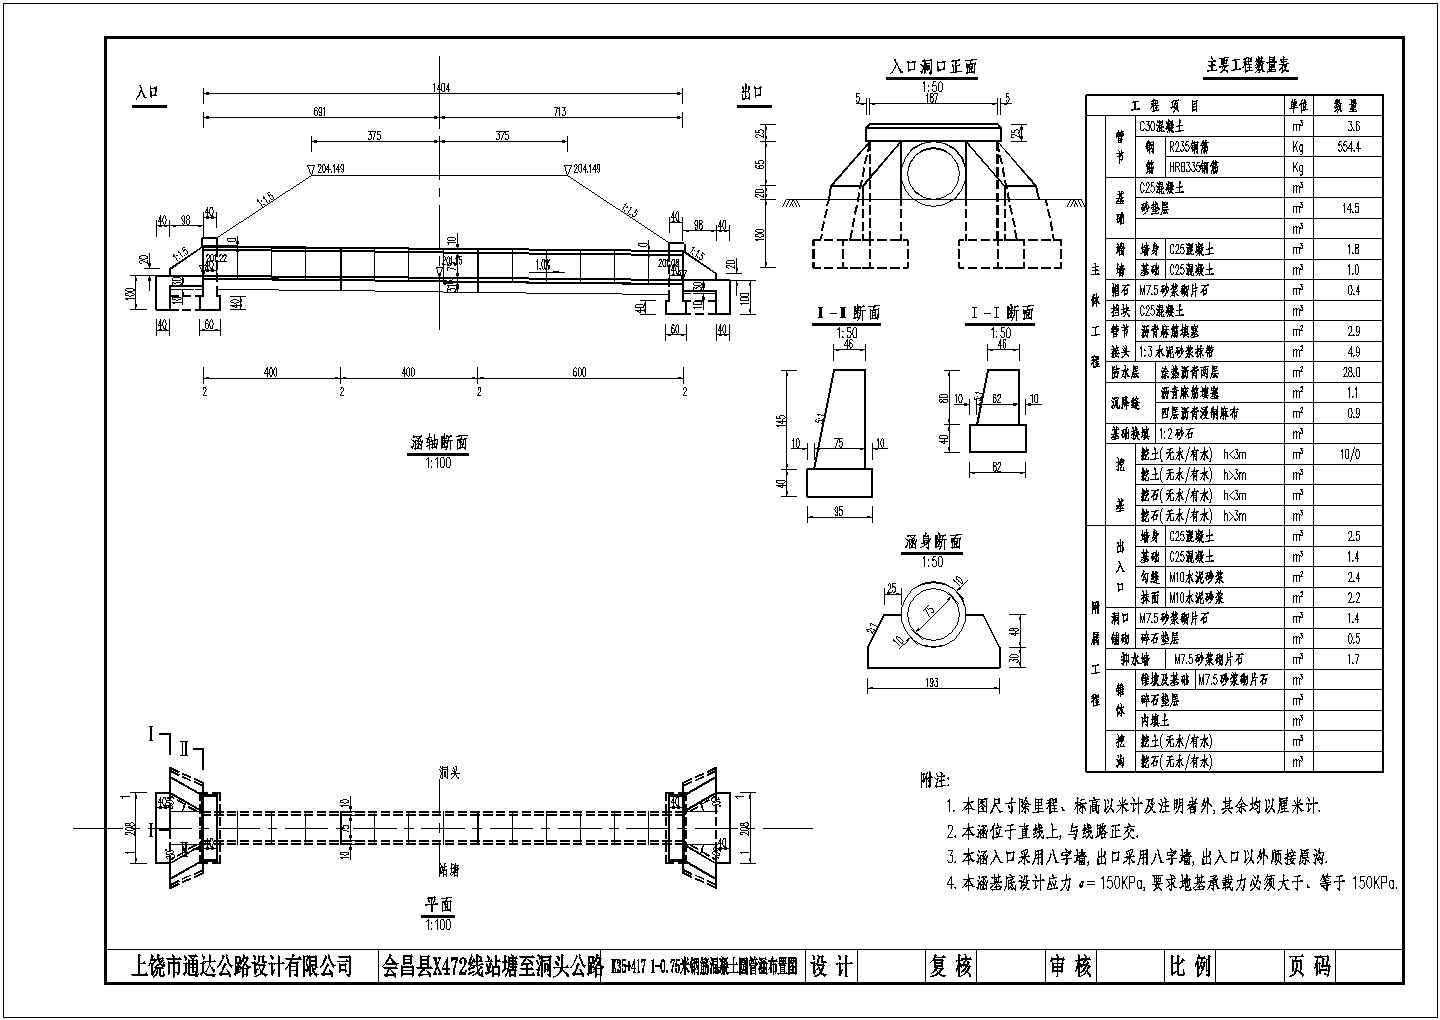 某工程1-075米钢筋混凝土圆管涵布置图(直线段、正交)